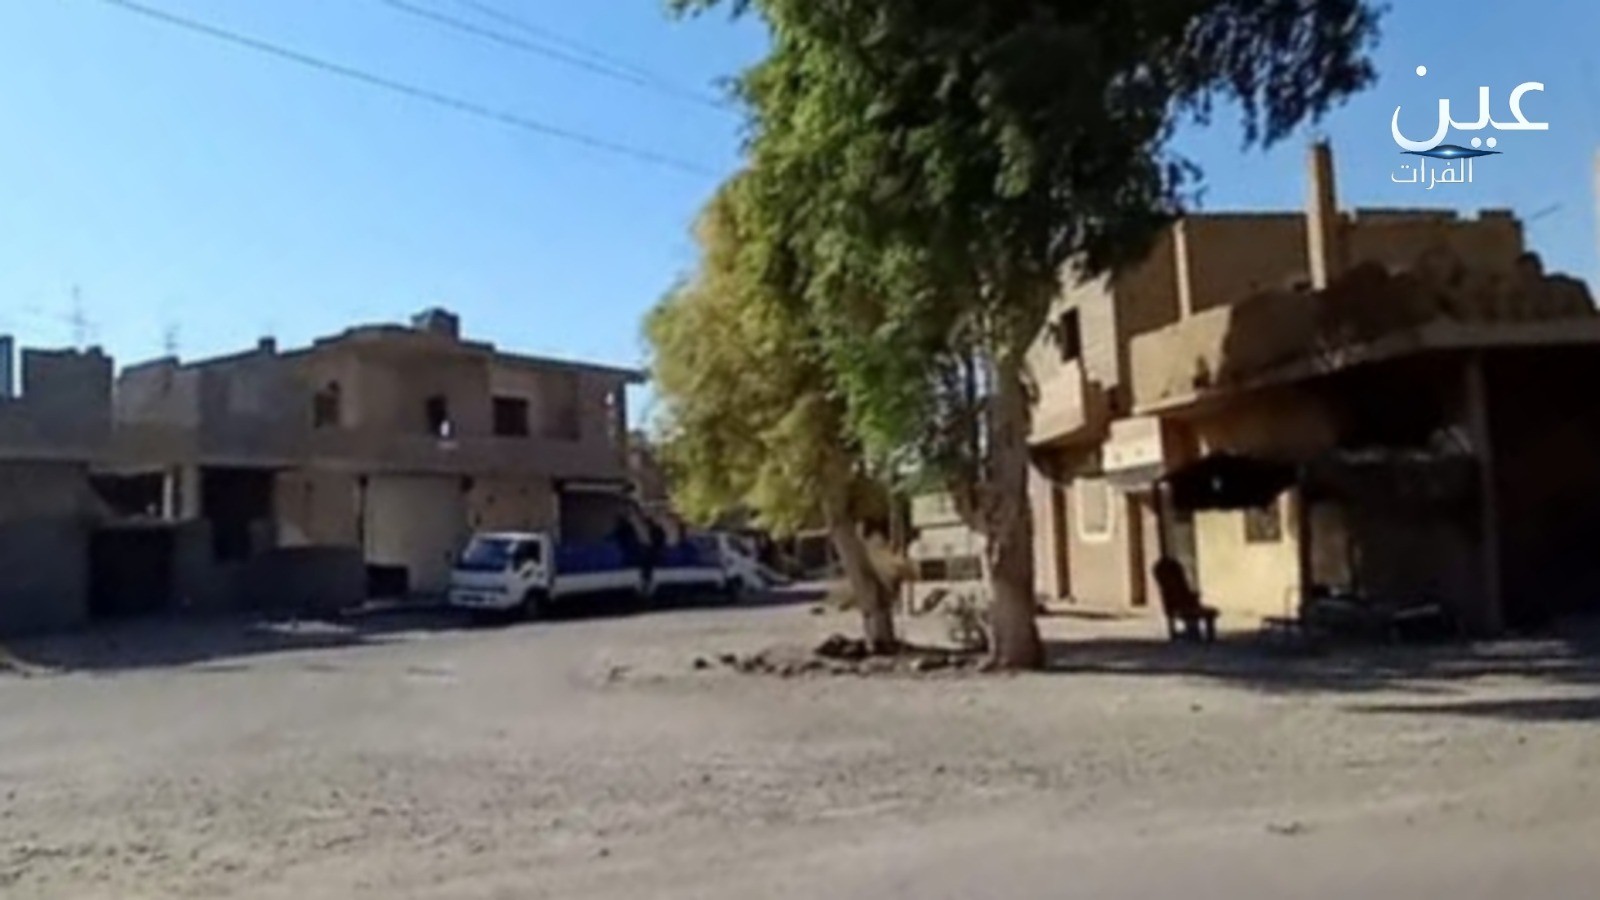 الميليشيات الإيرانية في سوريا أقدمت على تهجير عائلة "الزهوات" بشكل كامل من قرية حالة في دير الزور